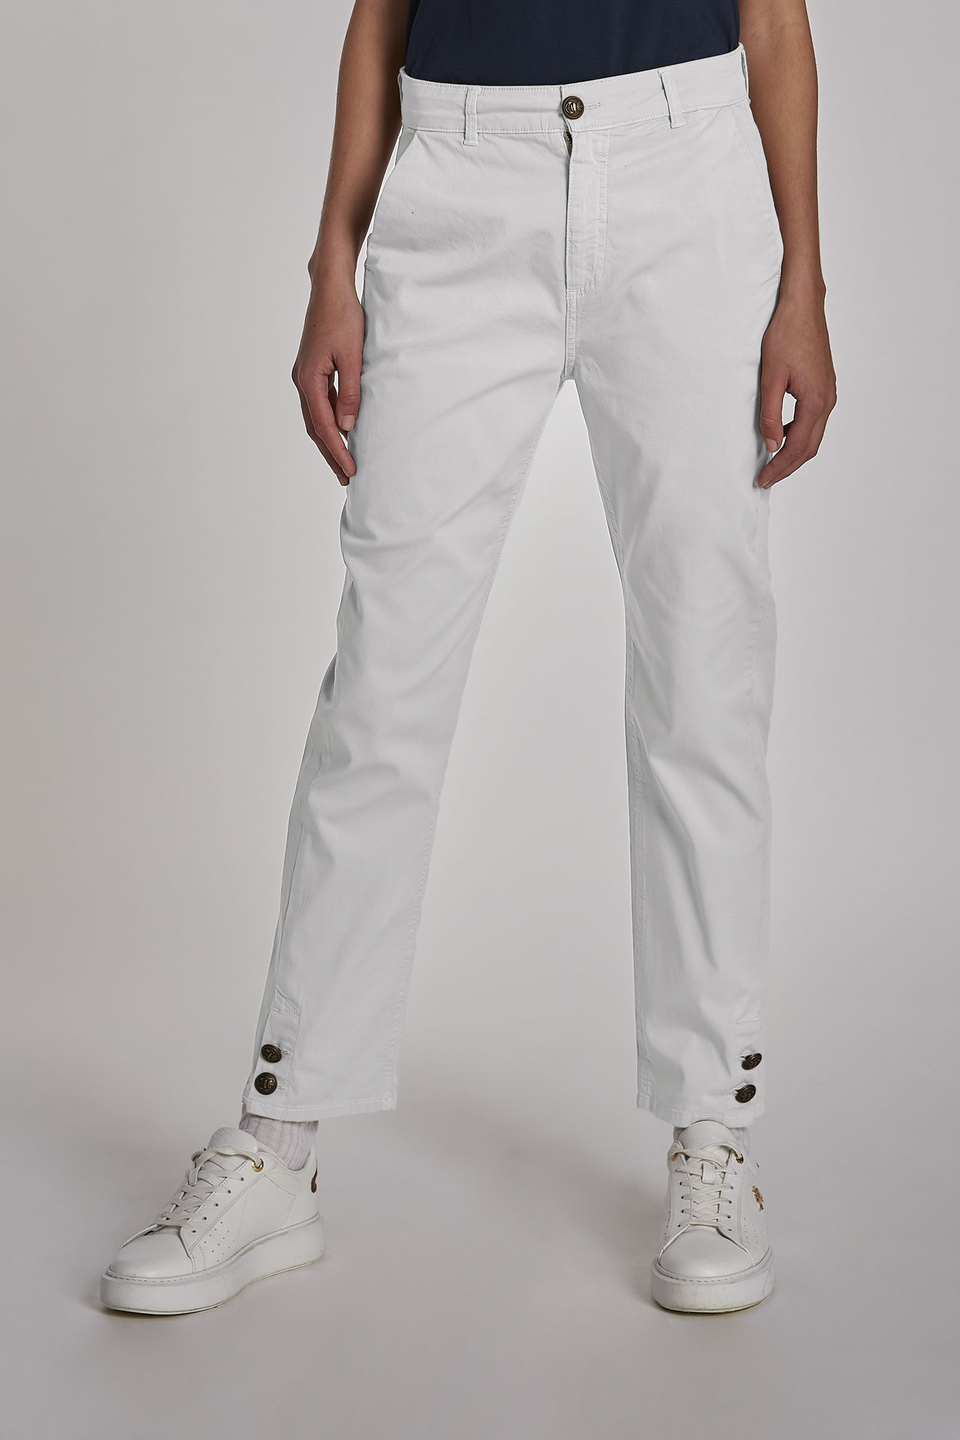 De alguna manera Renacimiento corona Pantalón de mujer, modelo 5 bolsillos de algodón, corte regular Blanco  Óptico La Martina | Shop Online